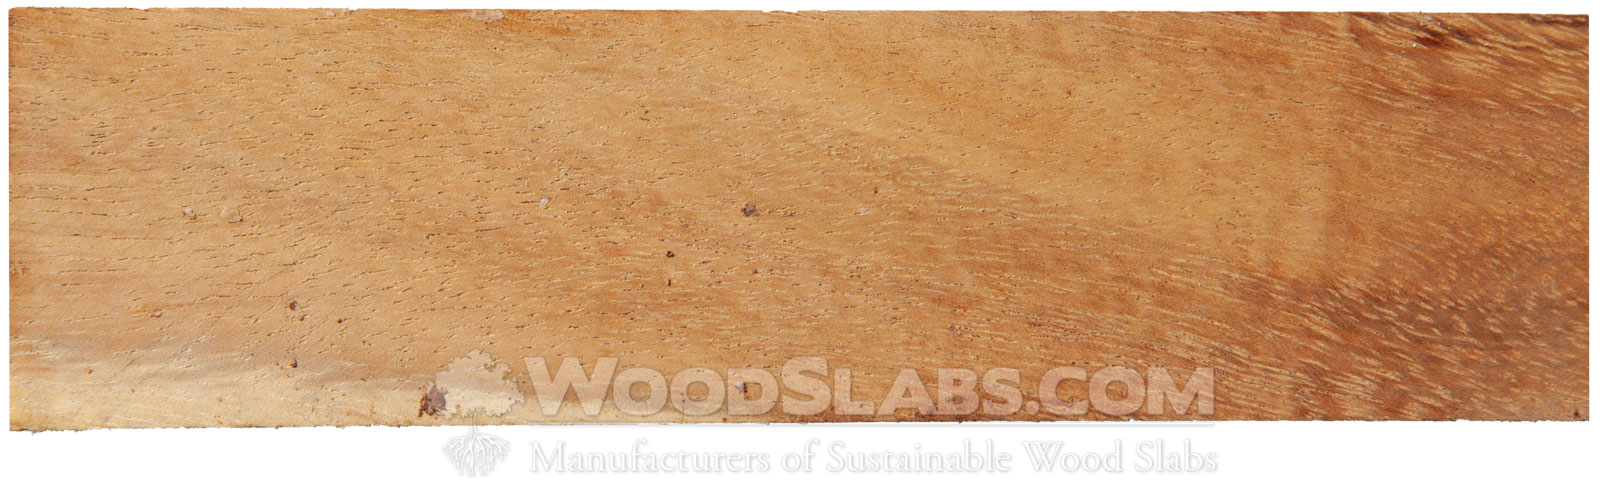 Leadwood Slabs